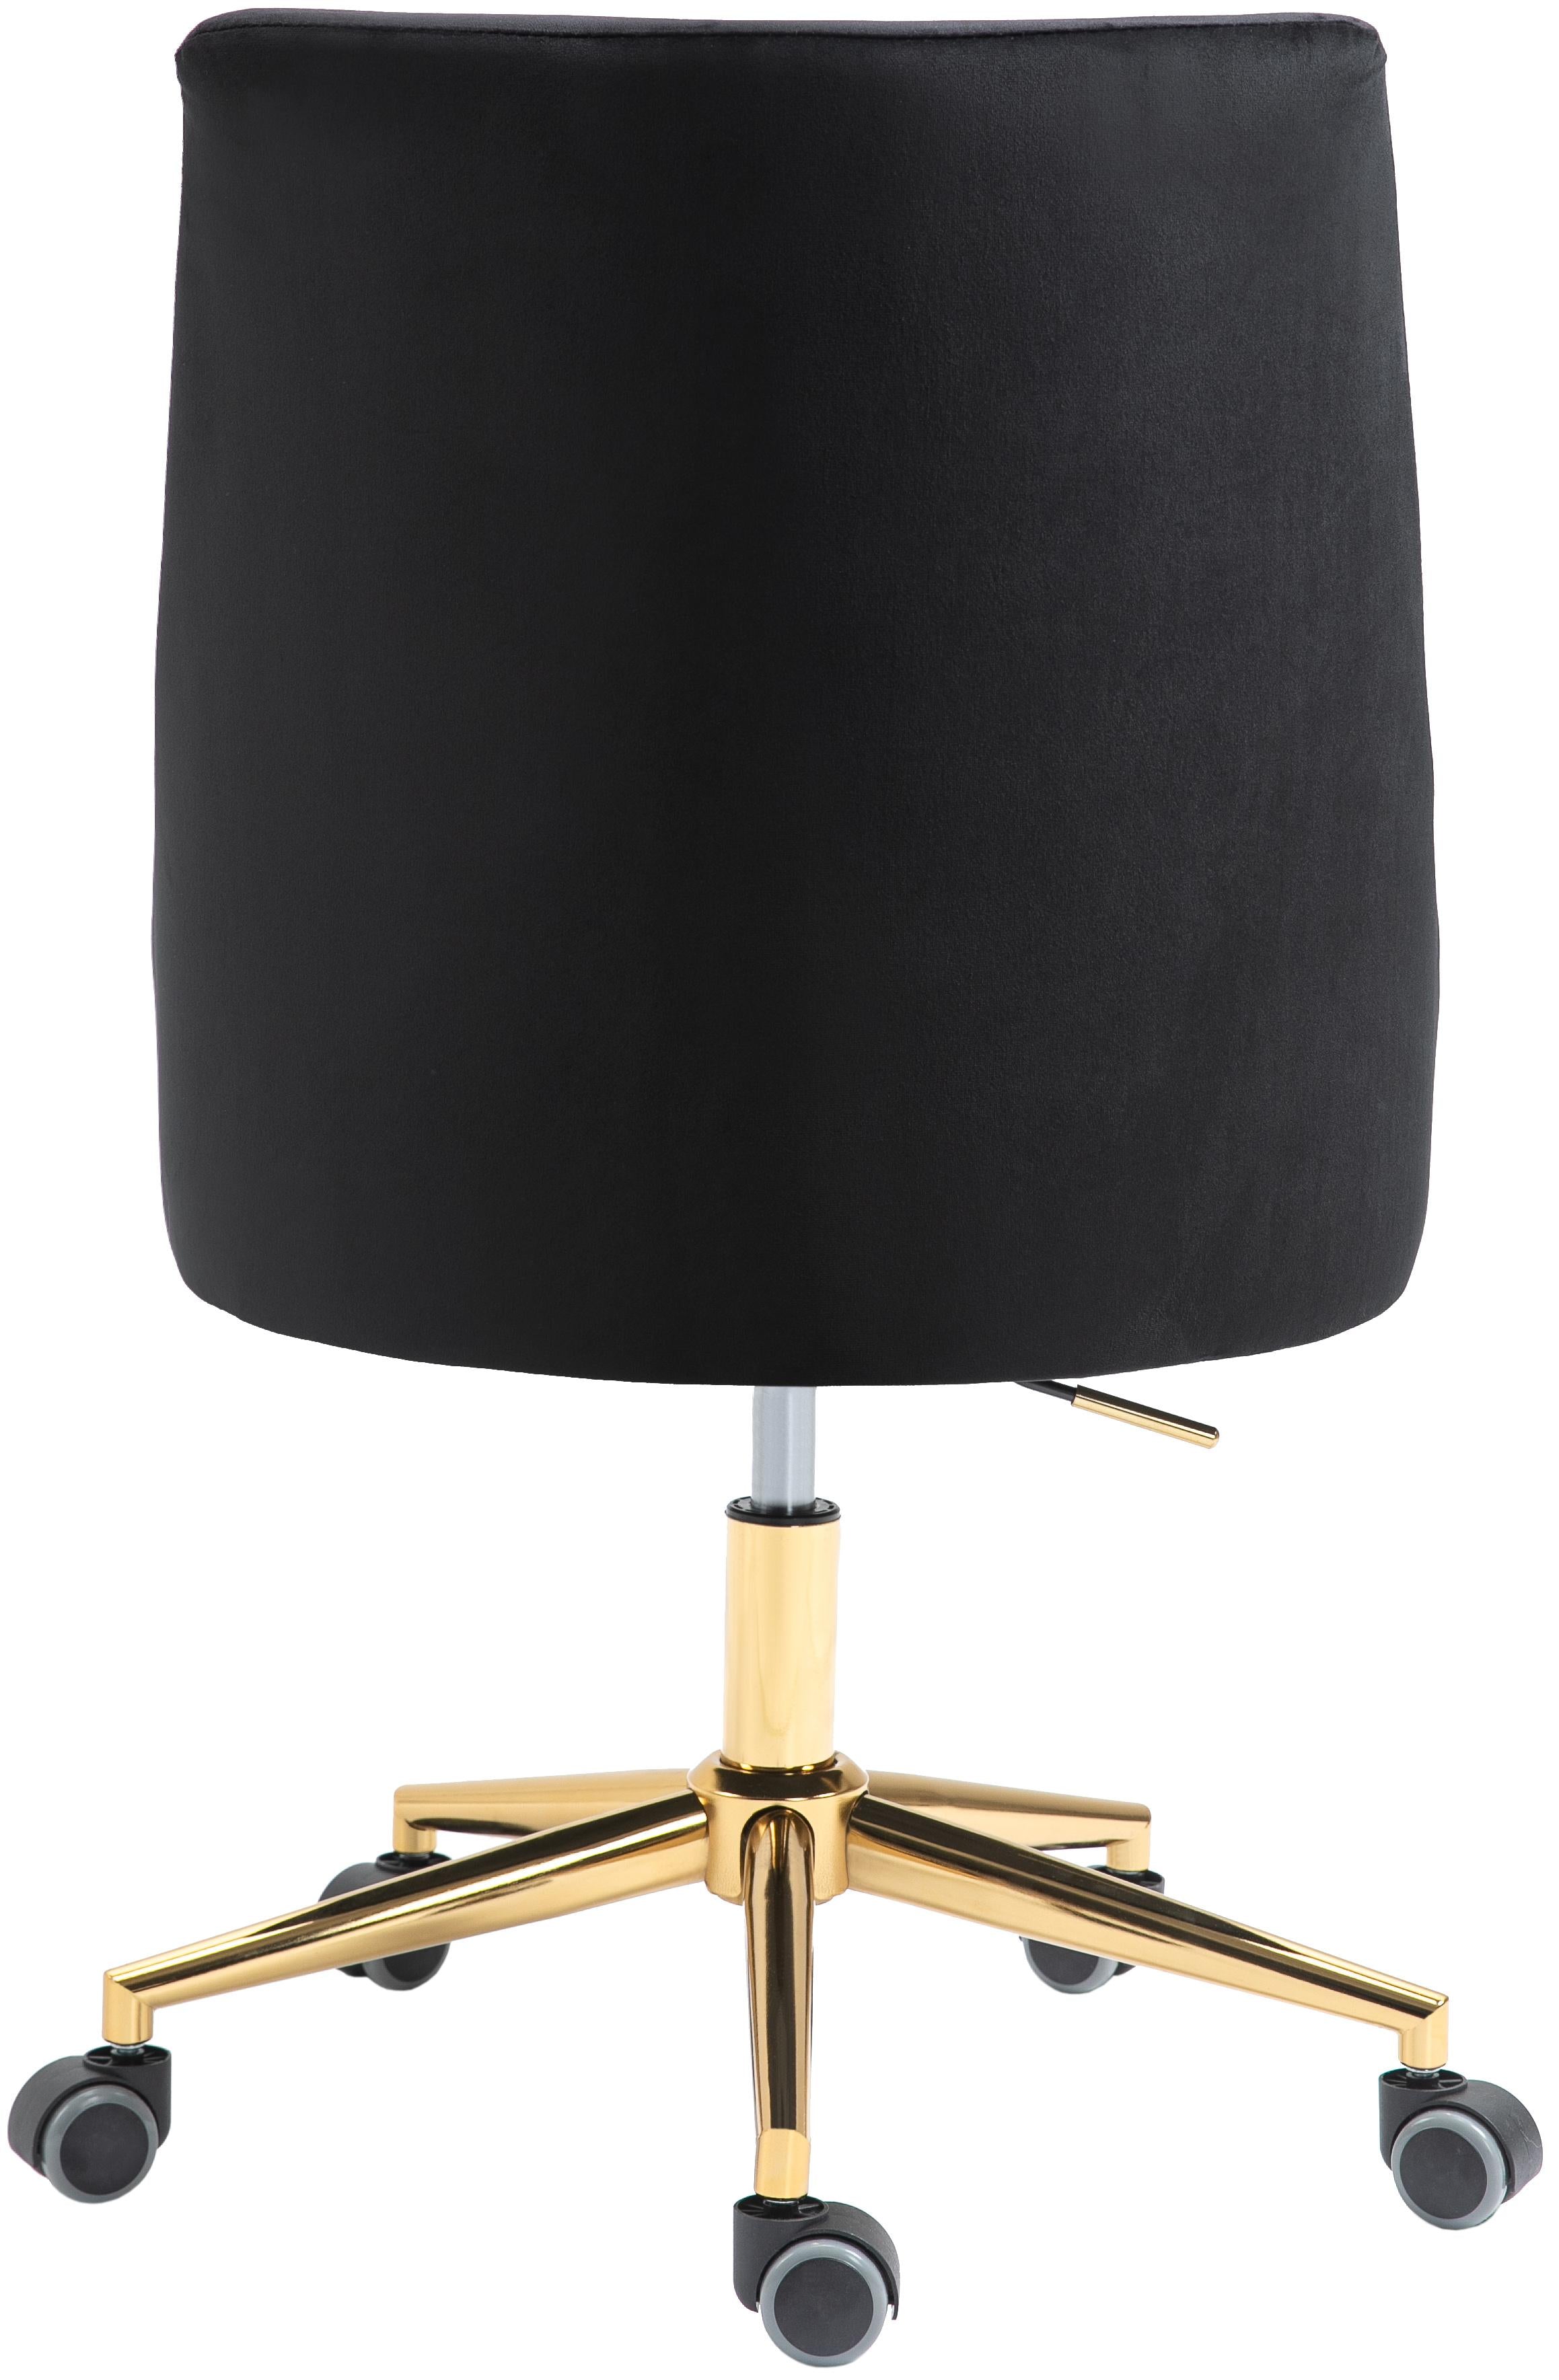 Karina Black Velvet Office Chair - Luxury Home Furniture (MI)